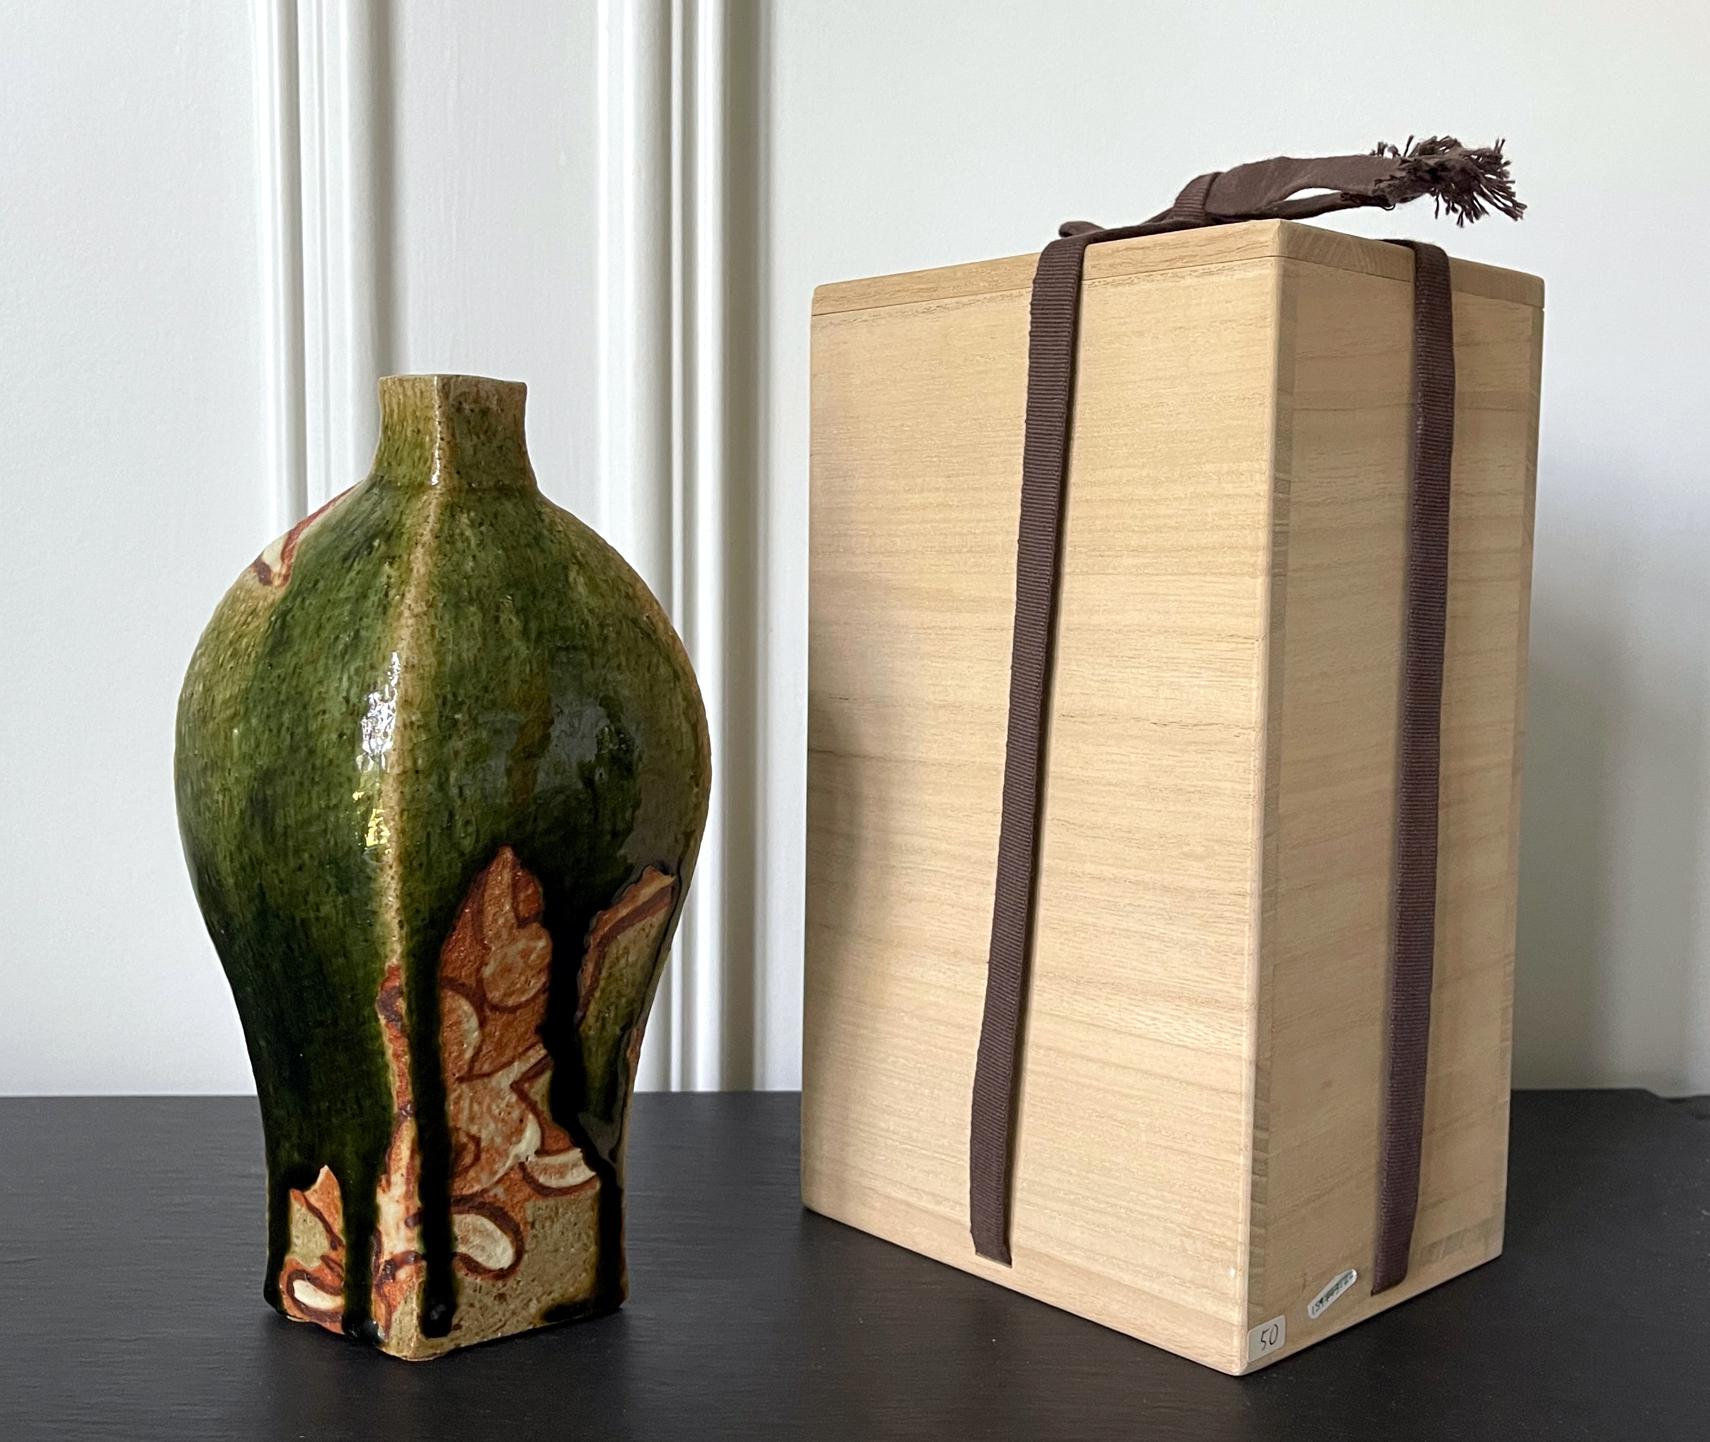 Un vase contemporain en céramique réalisé par le potier japonais Ken Matsuzaki (1950-). Le vase présente une forme géométrique en fuseau, assez distinctement moderne. Elle est recouverte d'une épaisse glaçure verte Oribe dégoulinante révélant